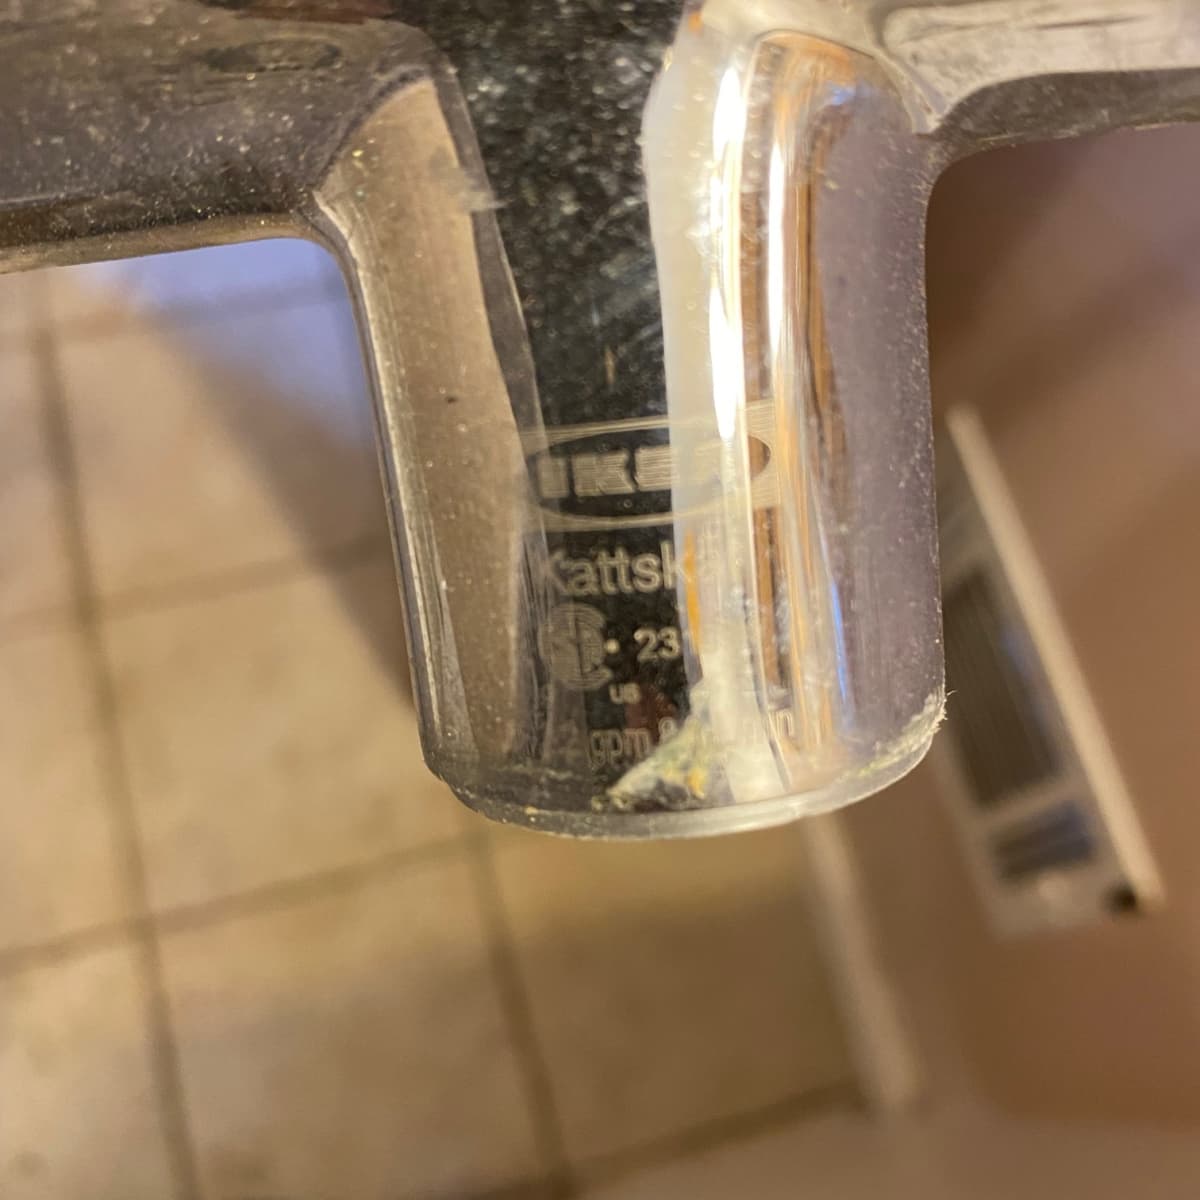 ik ontbijt onderwijzen veel plezier How to Connect IKEA Faucets to Your Home's Water Supply - Dengarden